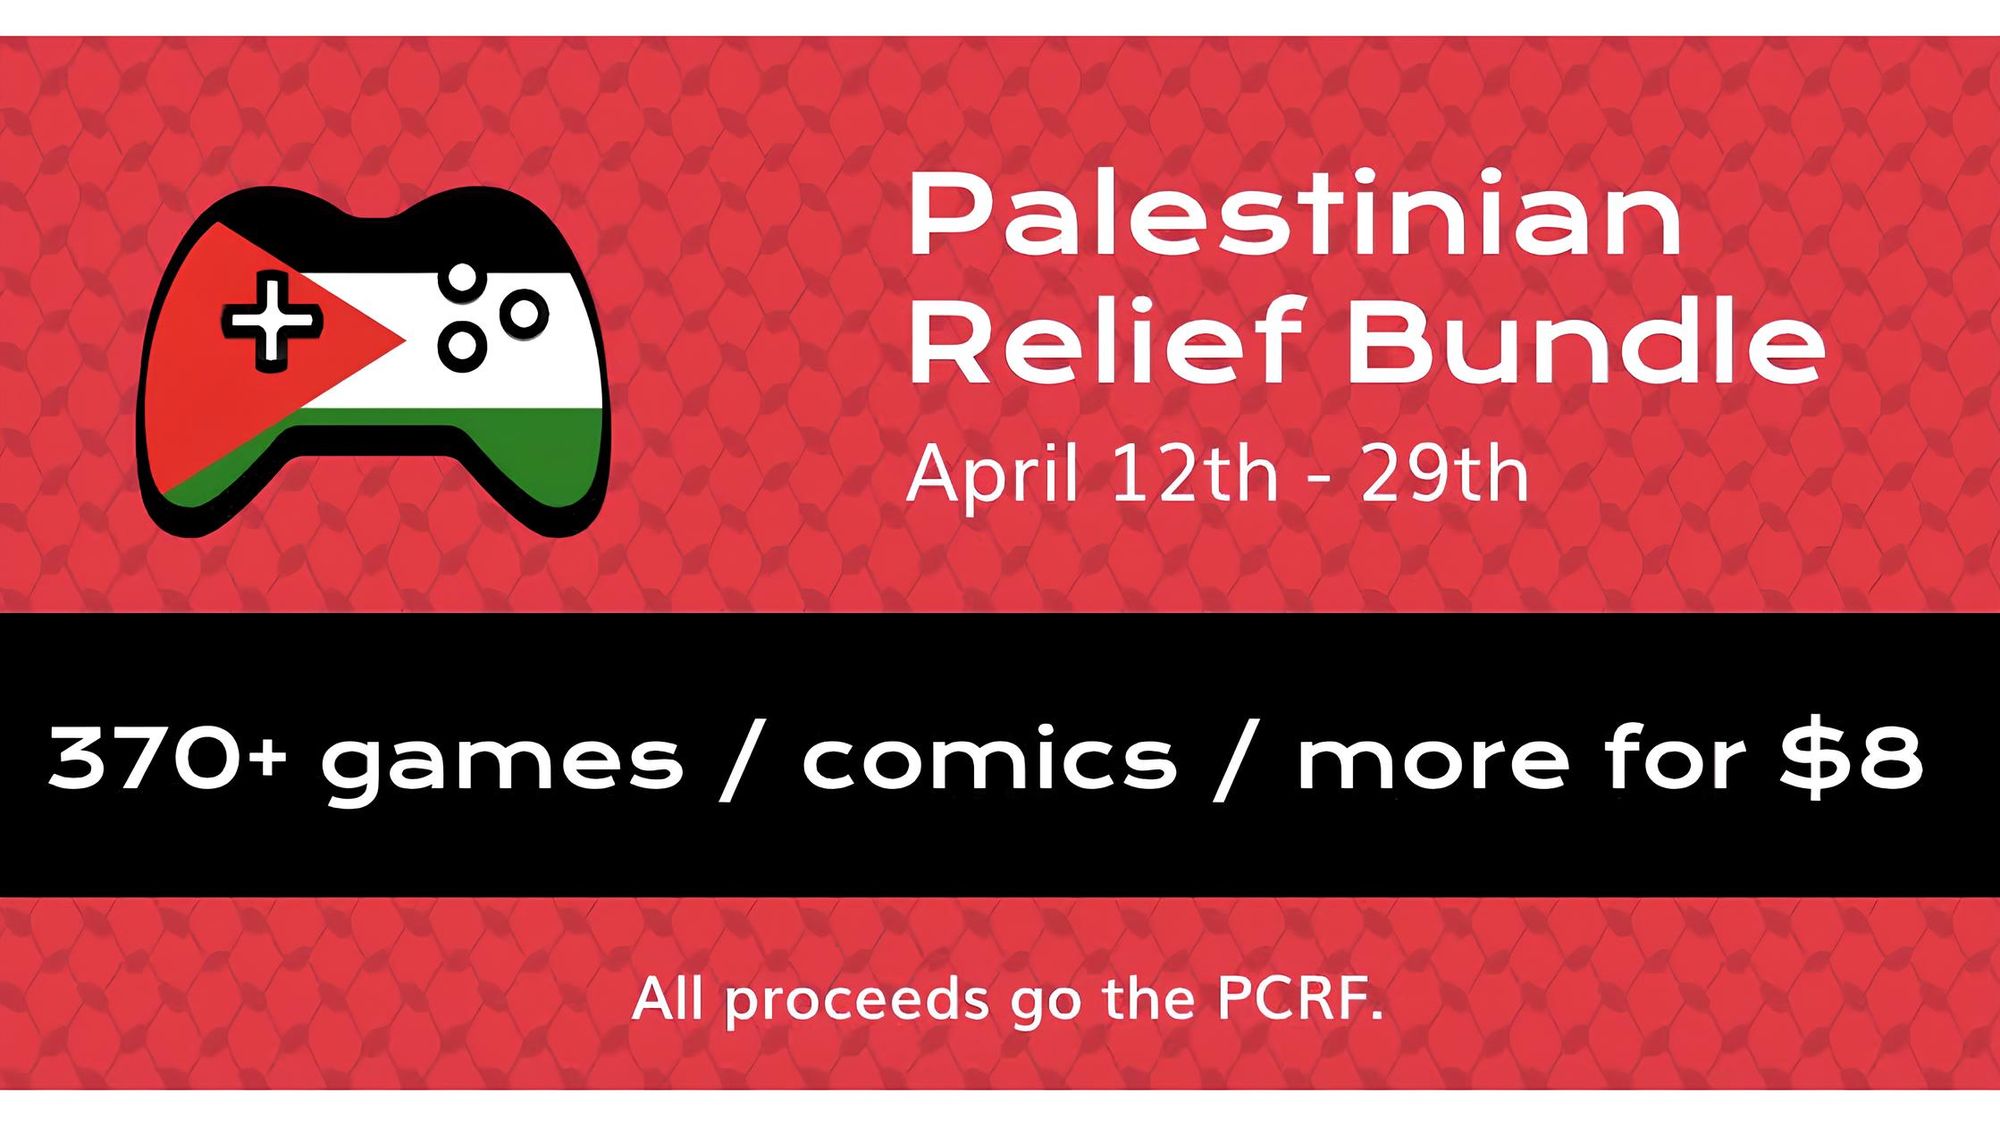 blog featureパレスチナの子どもたちを支援するチャリティーバンドル「Palestinian Relief Bundle」がitch.ioにてスタート（4月29日まで）